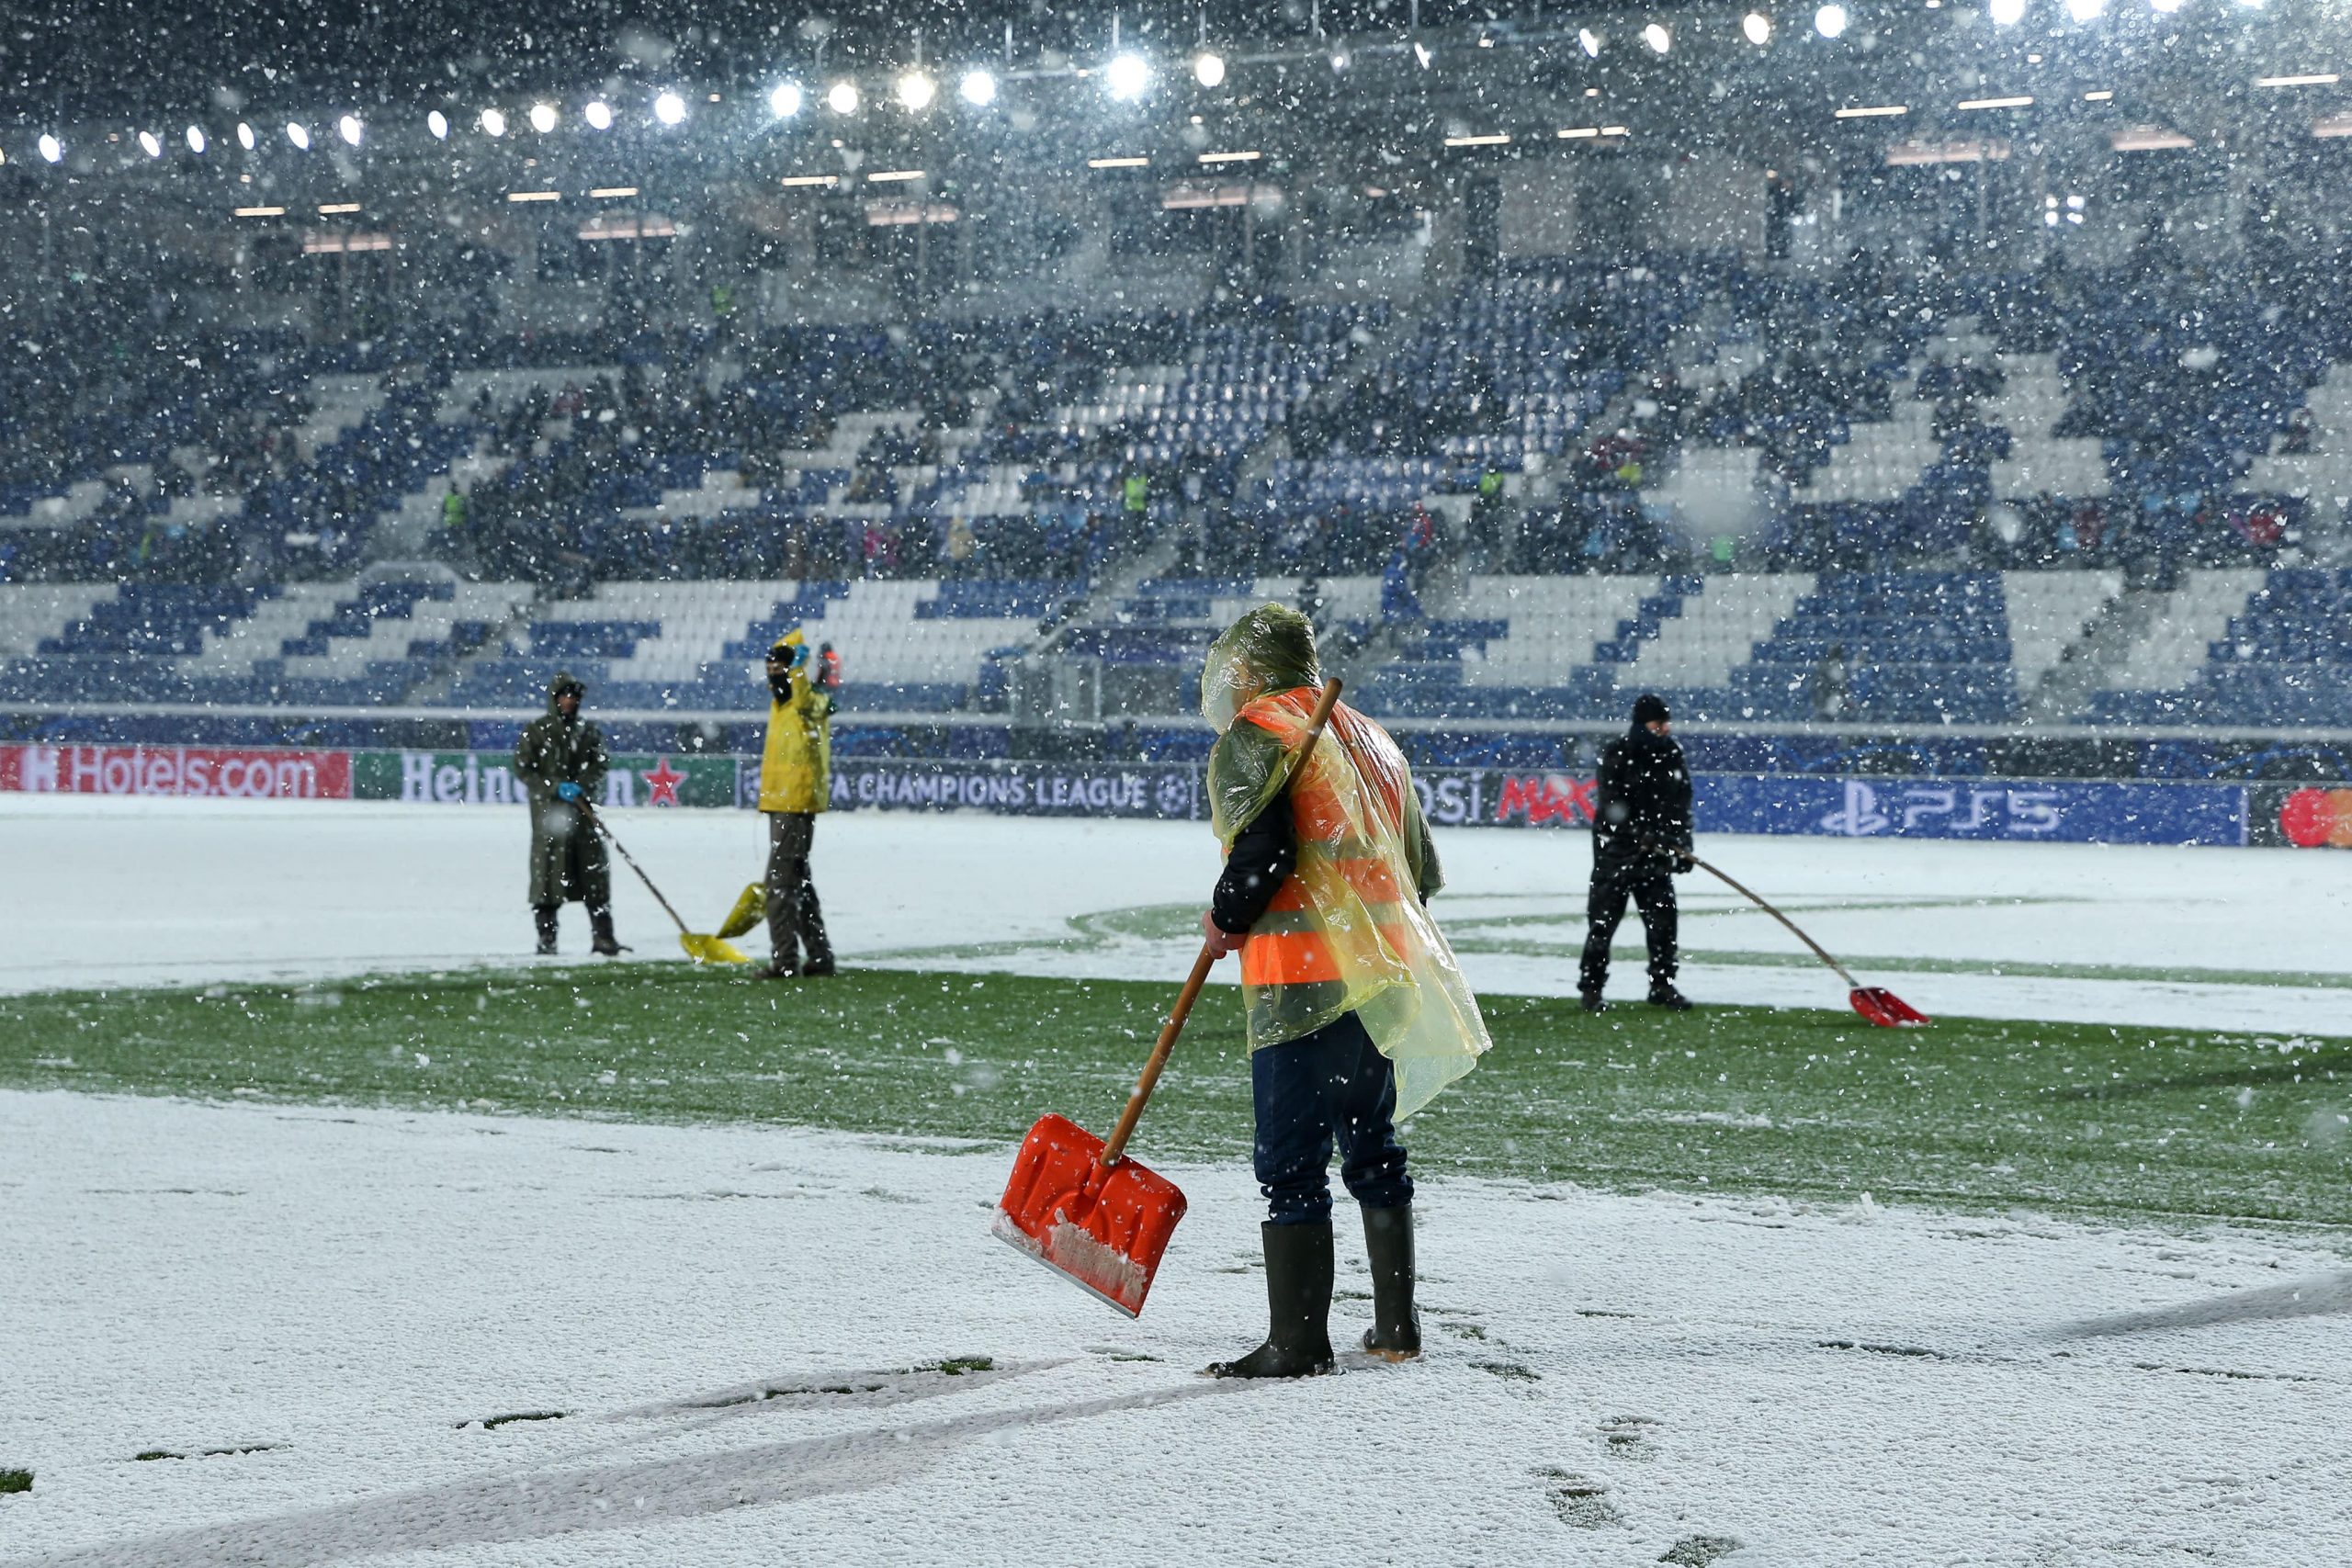 Sniegs ne tikai Latvijā – UEFA Čempionu līgas spēle tiek pārcelta uz šodienu